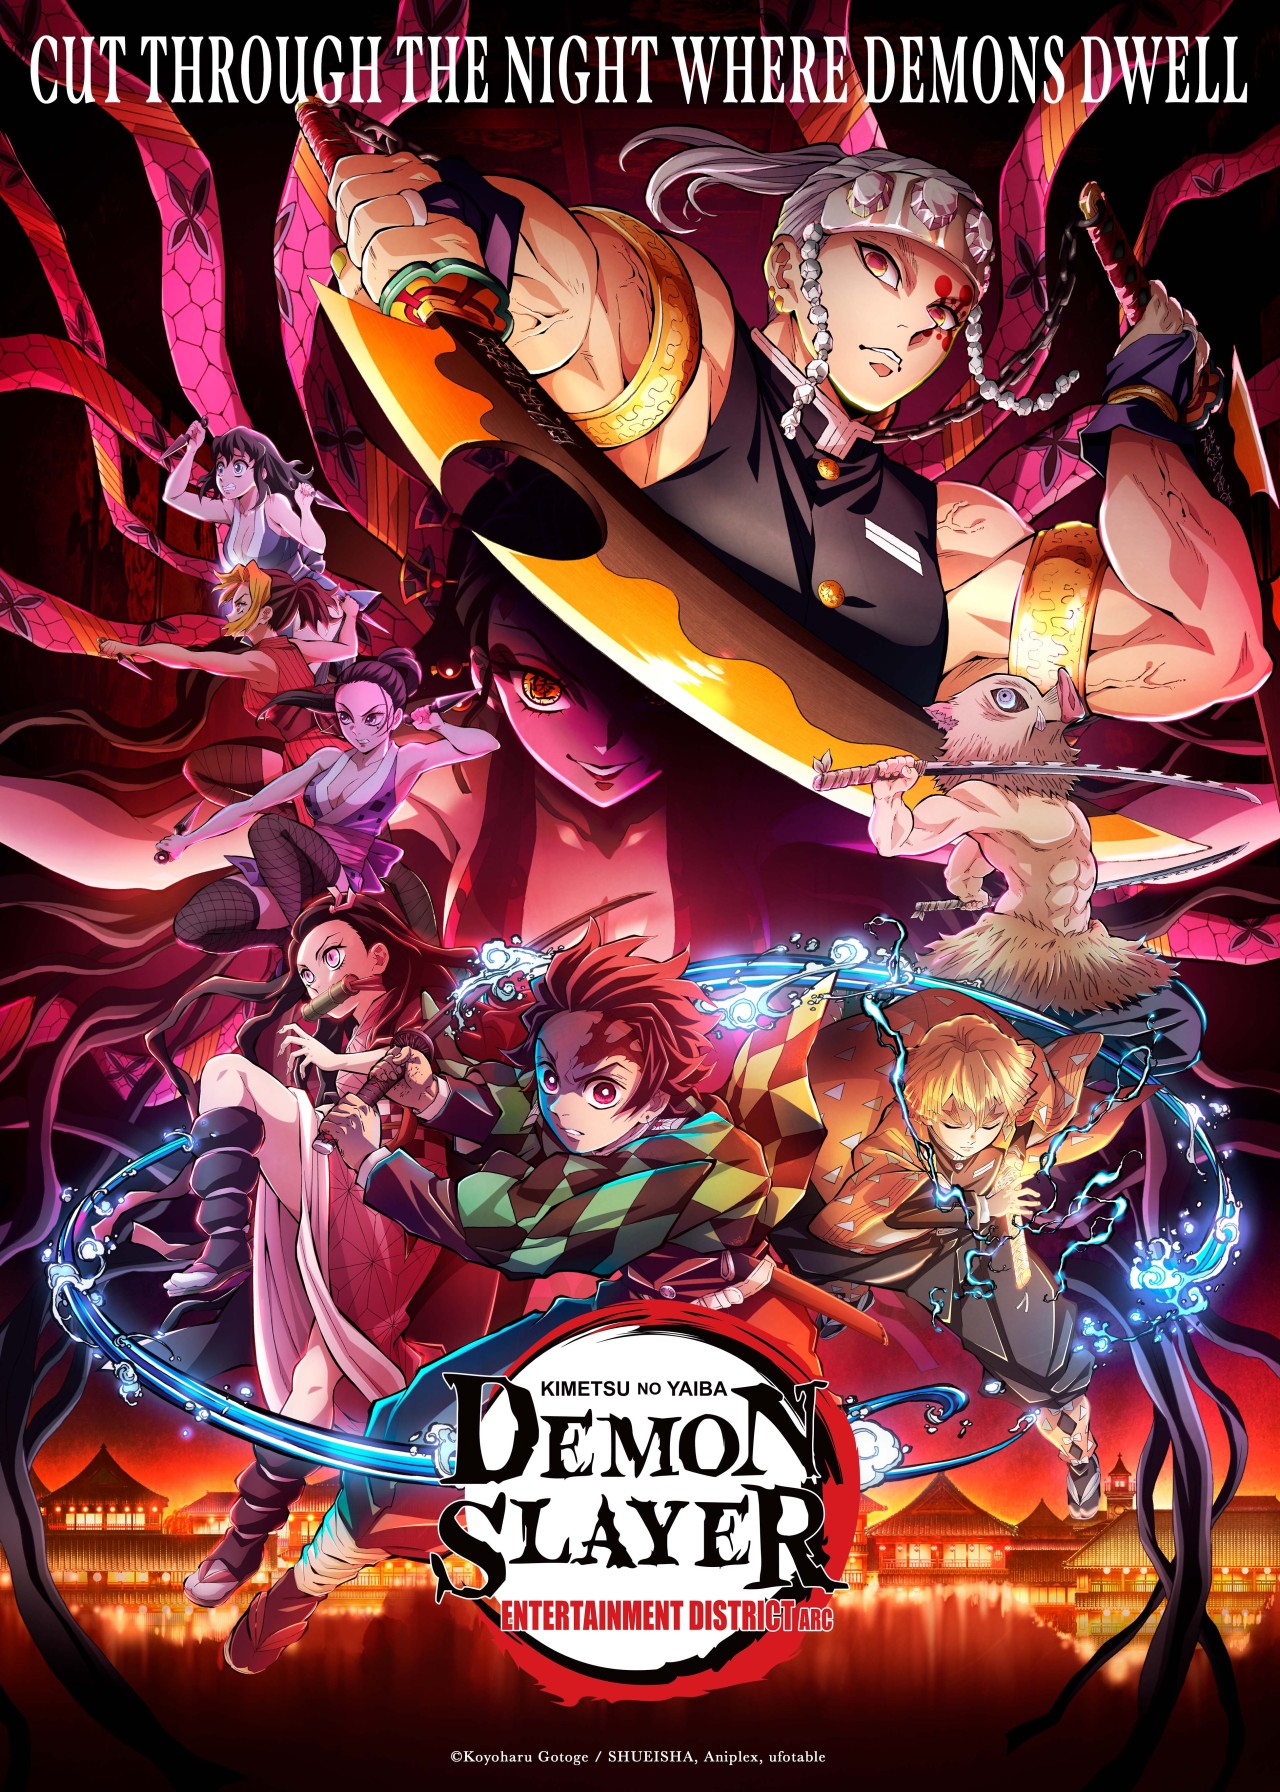 Demon Slayer: Kimetsu no Yaiba Promotion Reel 2024 